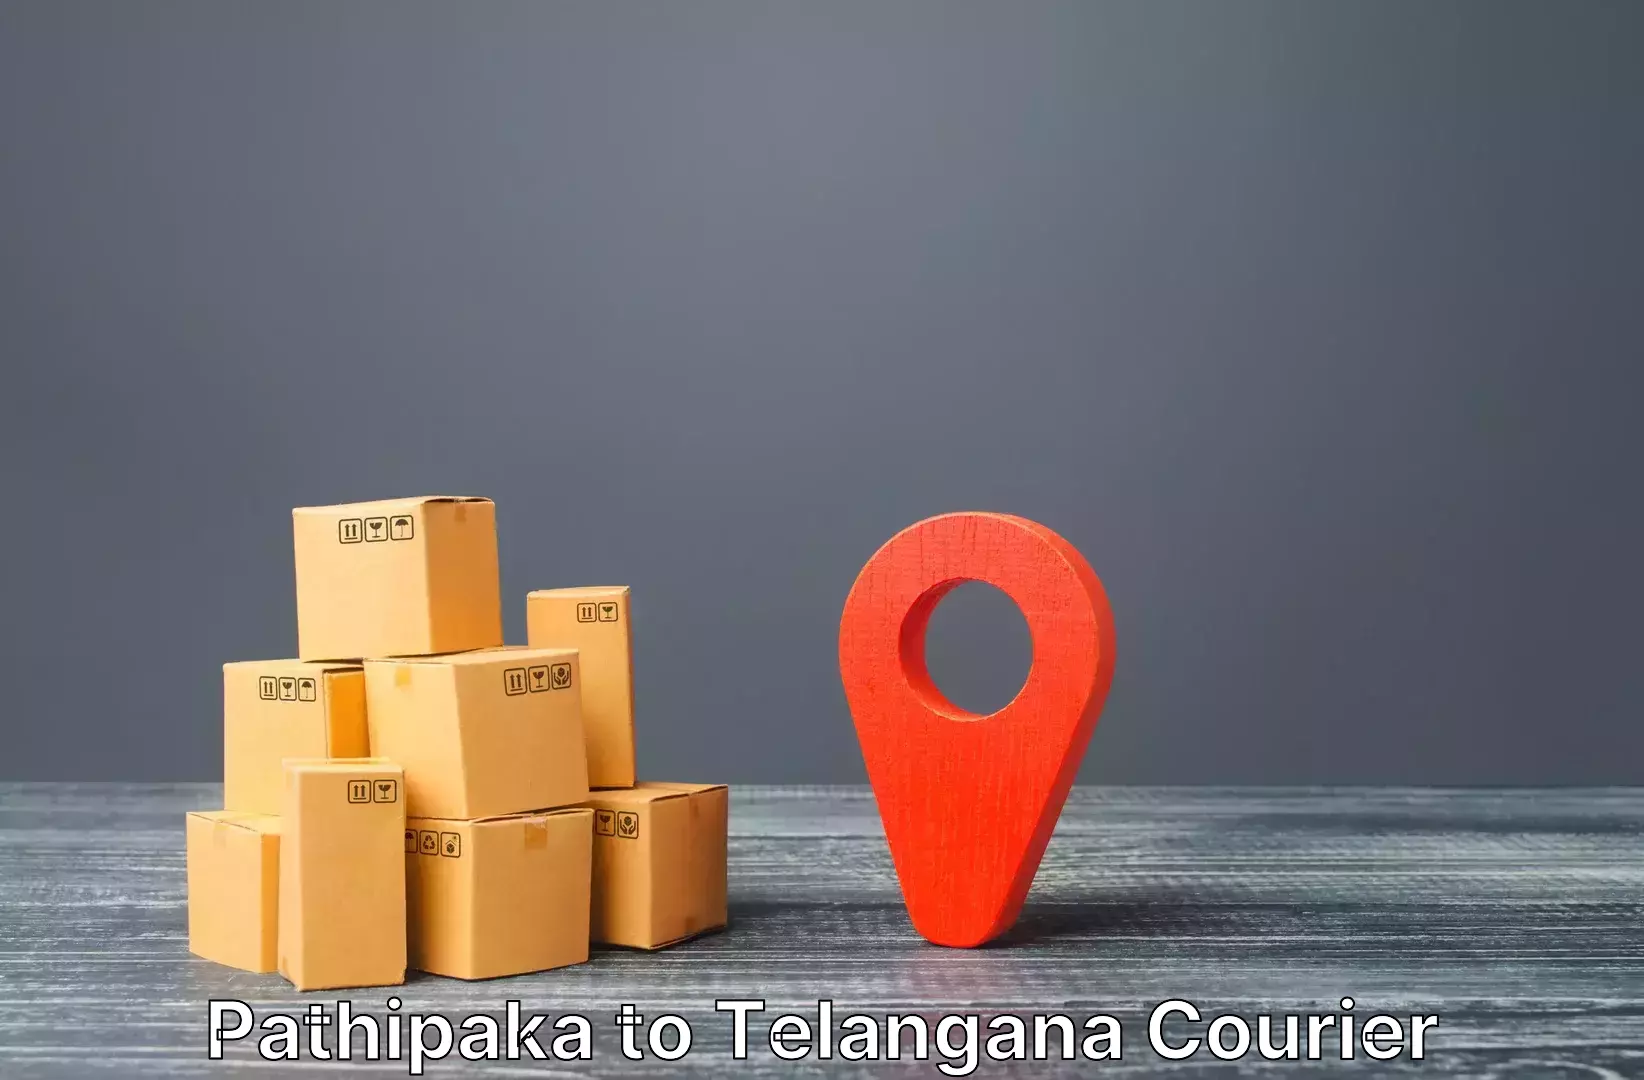 Luggage delivery estimate Pathipaka to Rudrangi